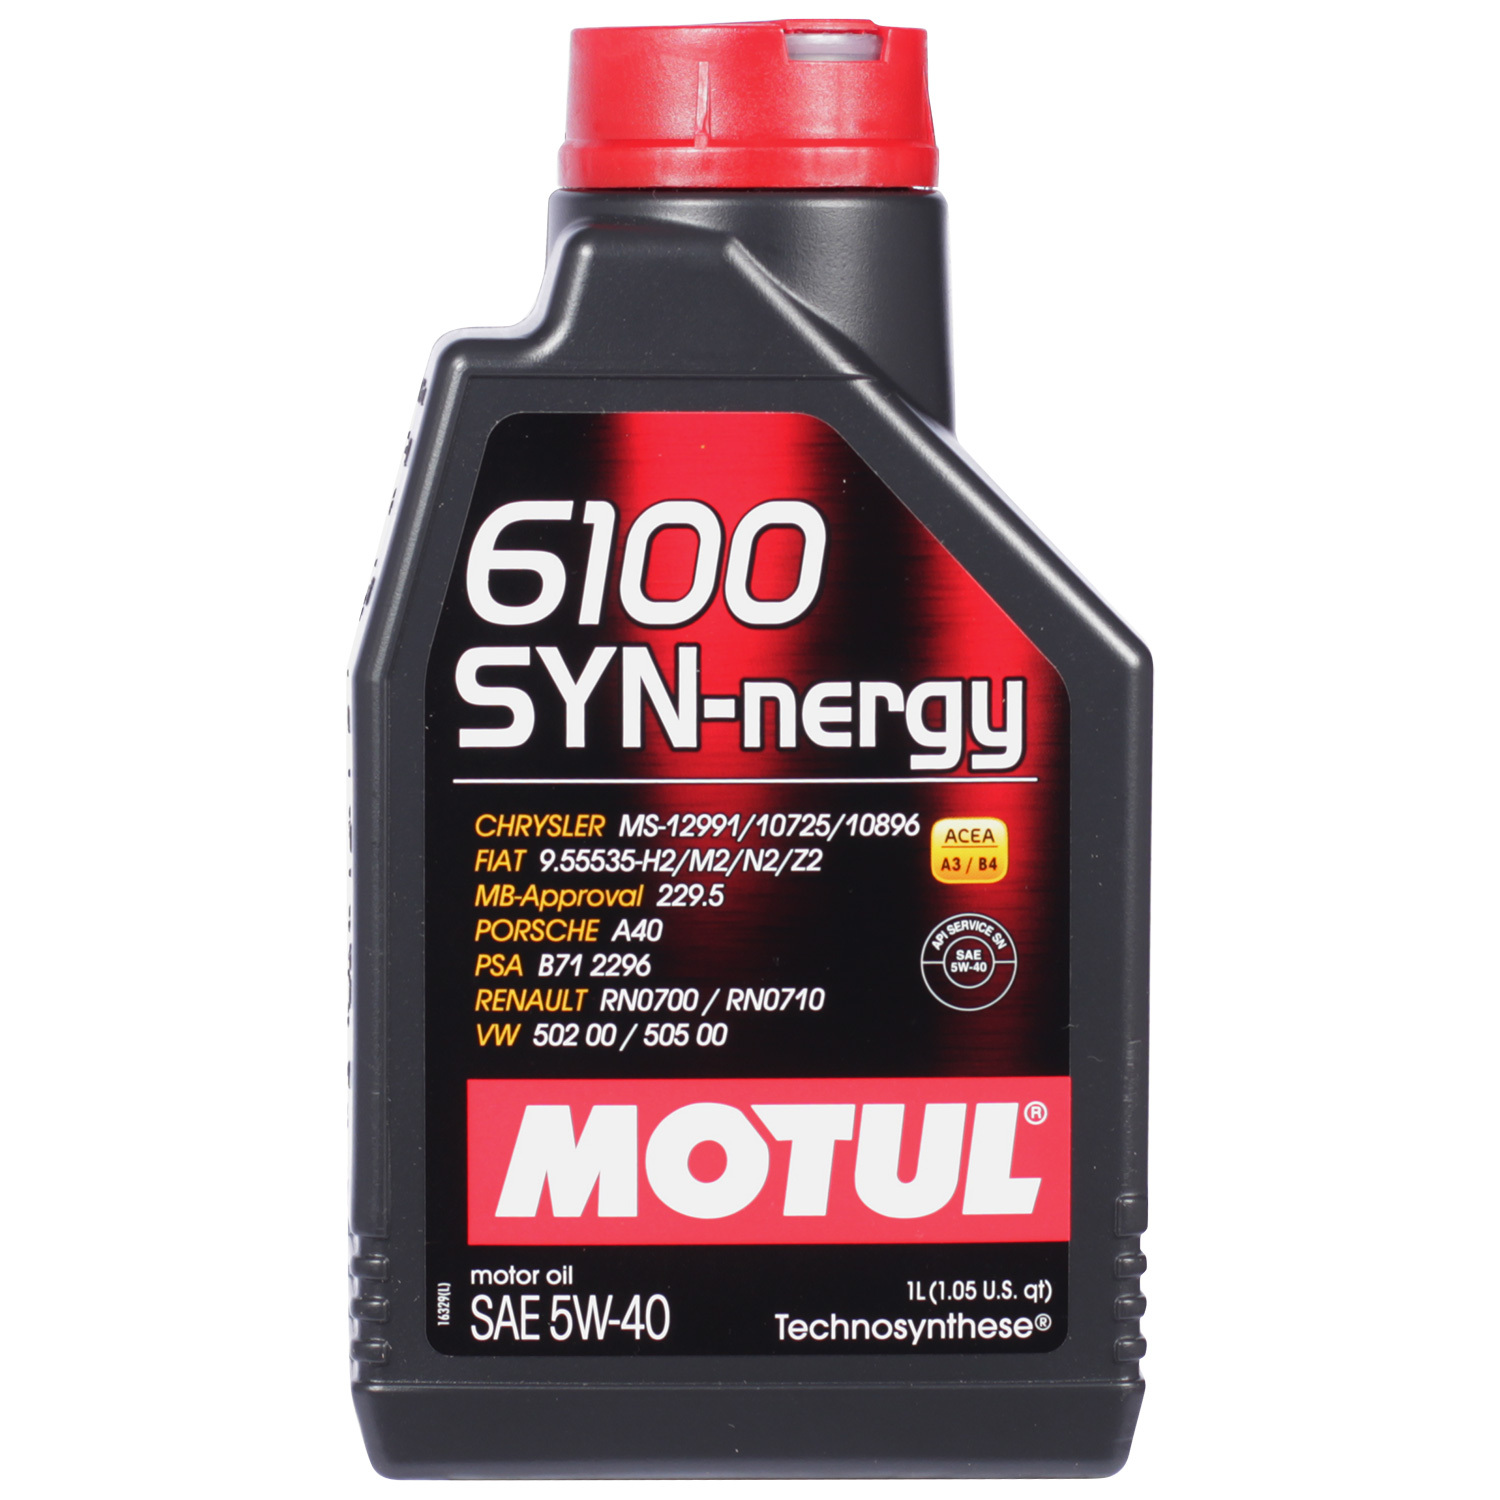 Motul Моторное масло Motul 6100 SYN-NERGY 5W-40, 1 л motul моторное масло motul 6100 save nergy 5w 30 4 л